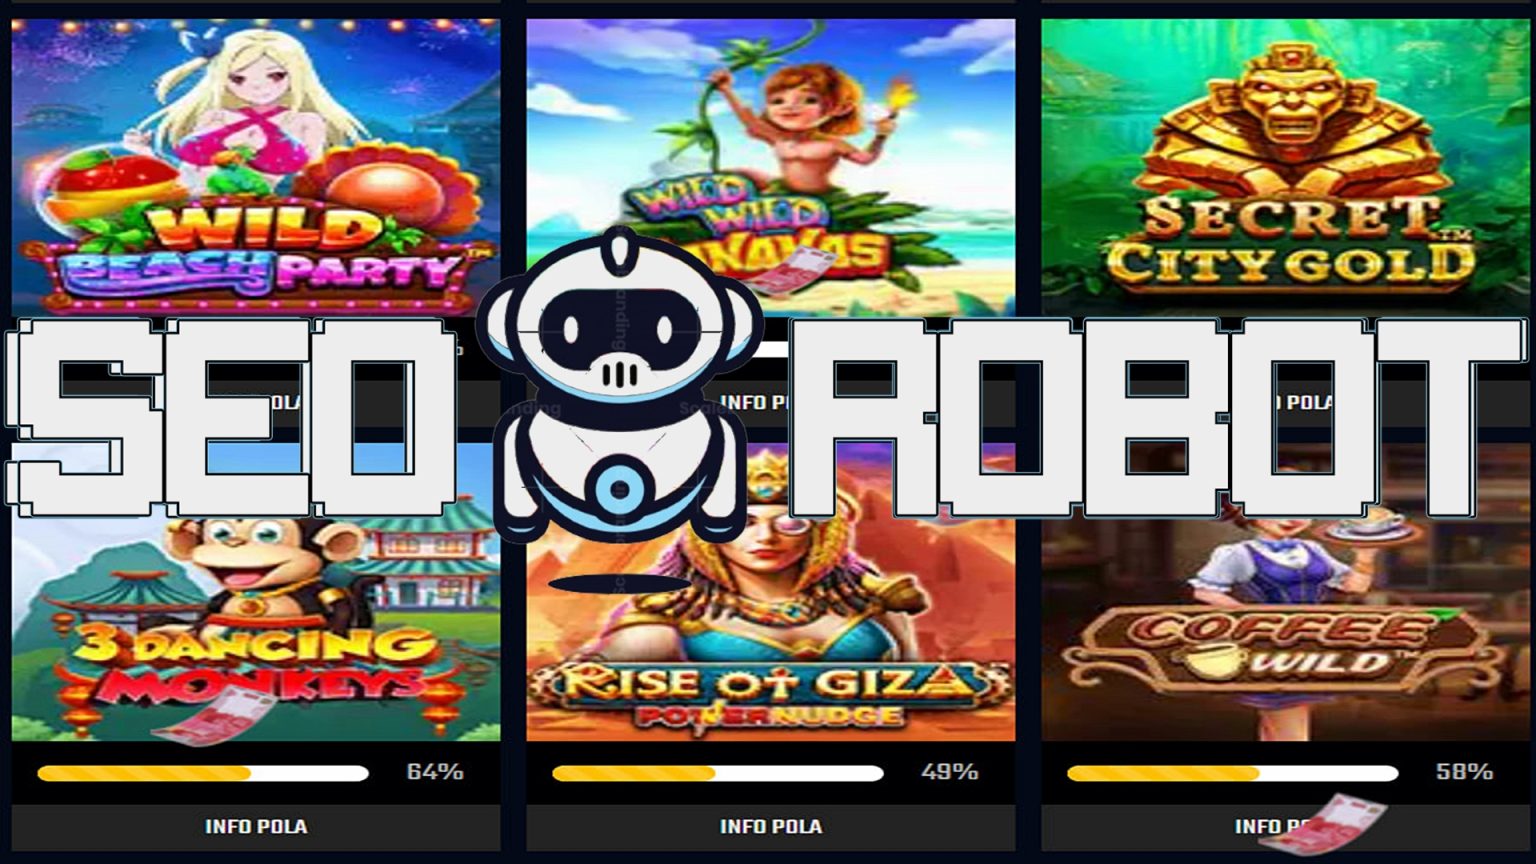 Mainkan Slot Online Game di Agen Judi Casino Terbaik!